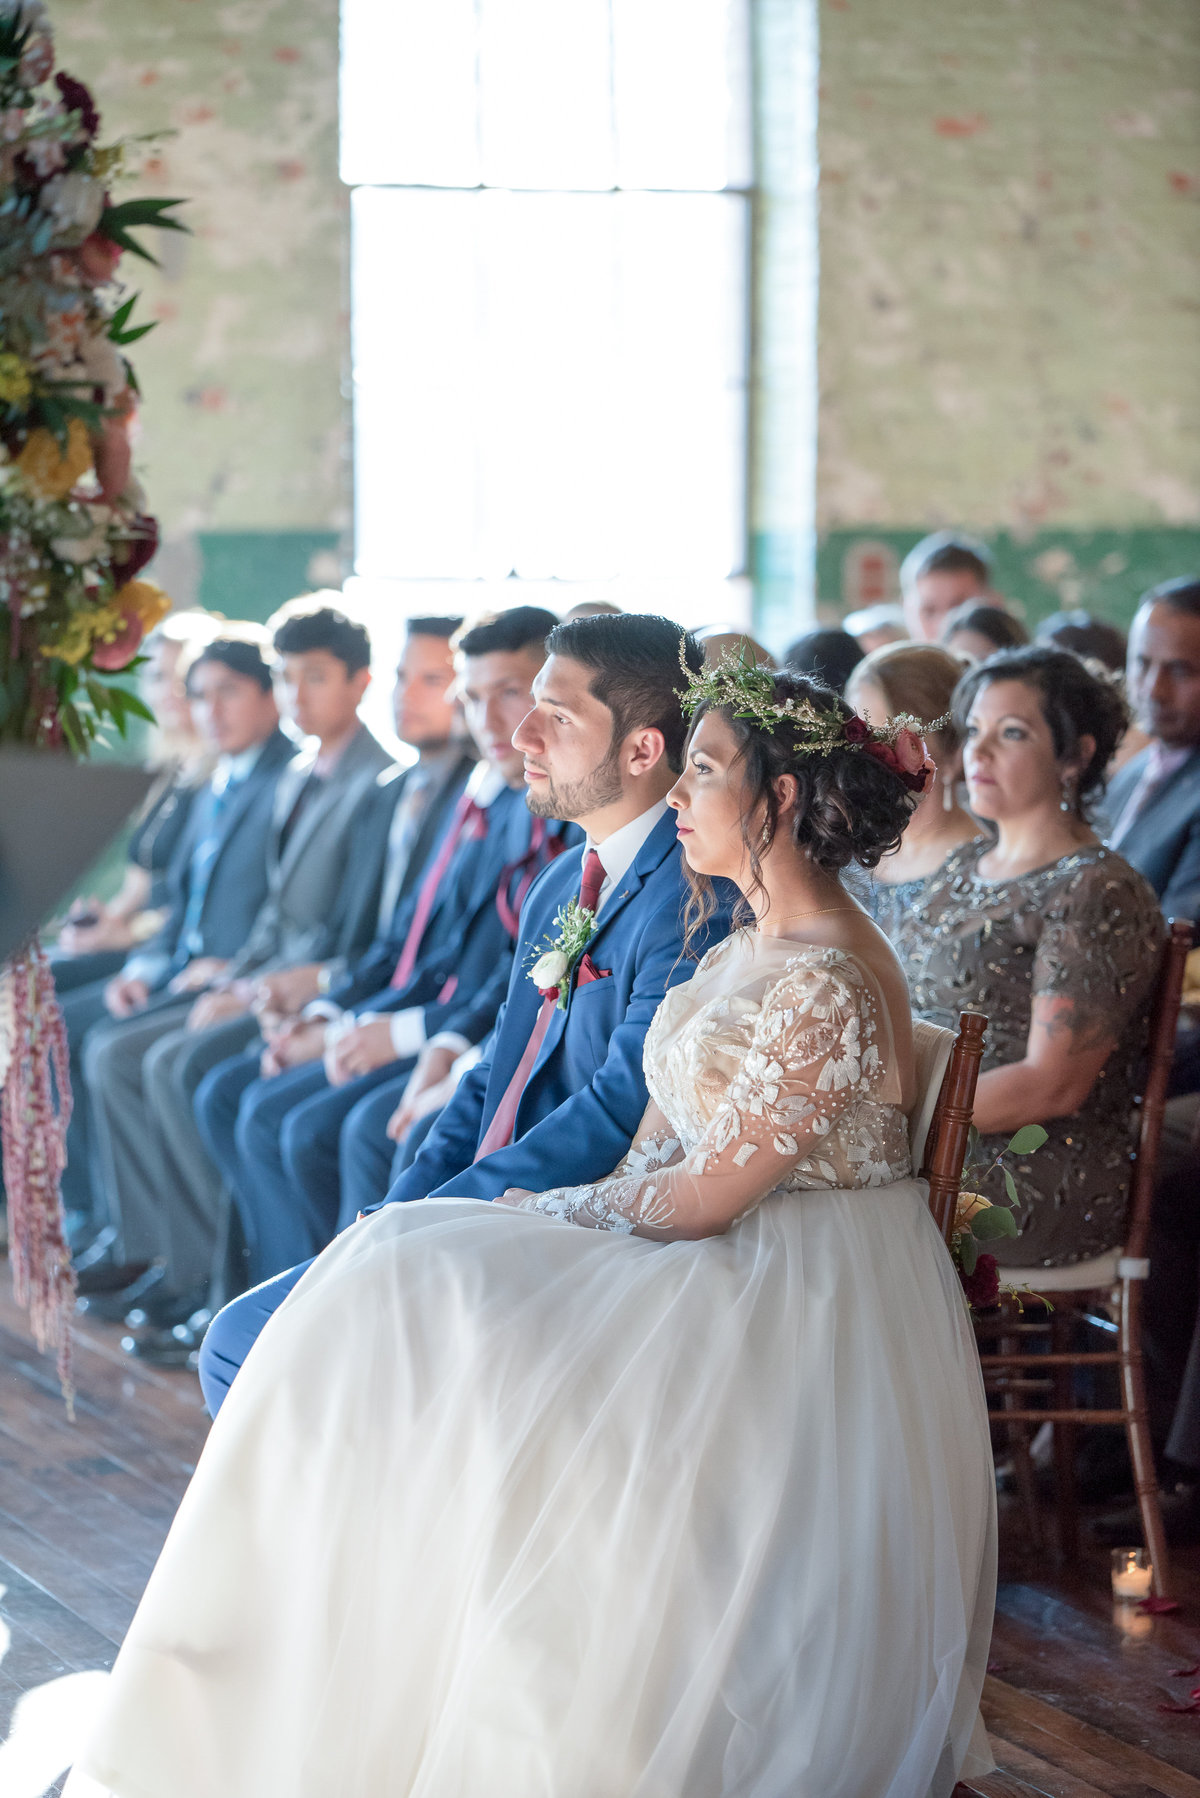 Best Rustic Wedding Venues in Georgia